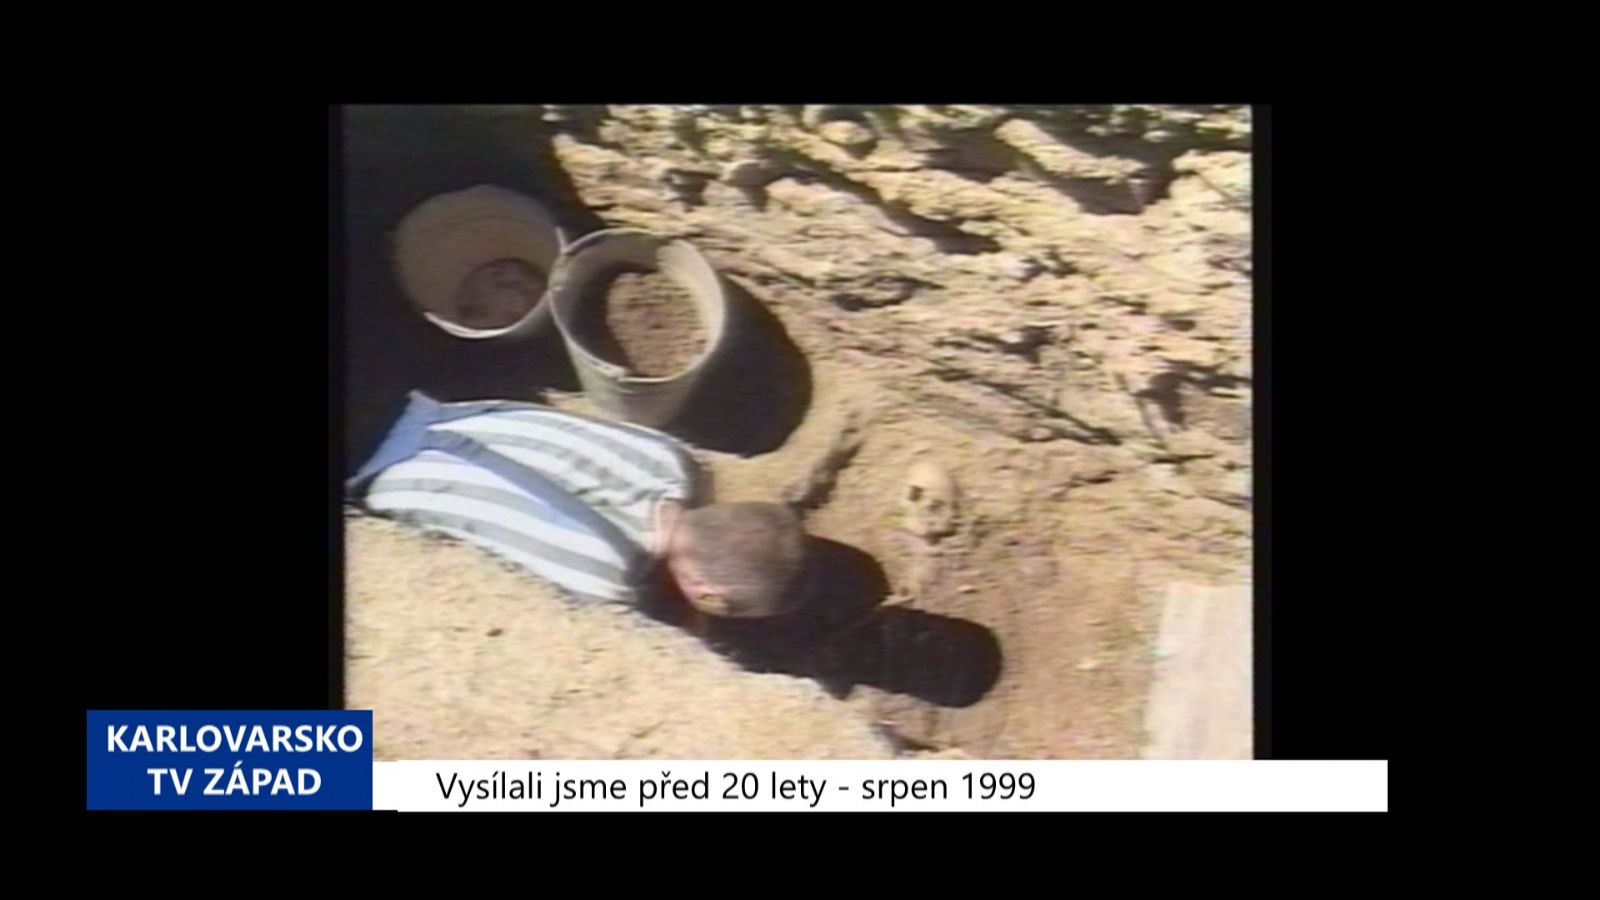 1999 - Cheb: Archeologický průzkum na hradě (TV Západ)